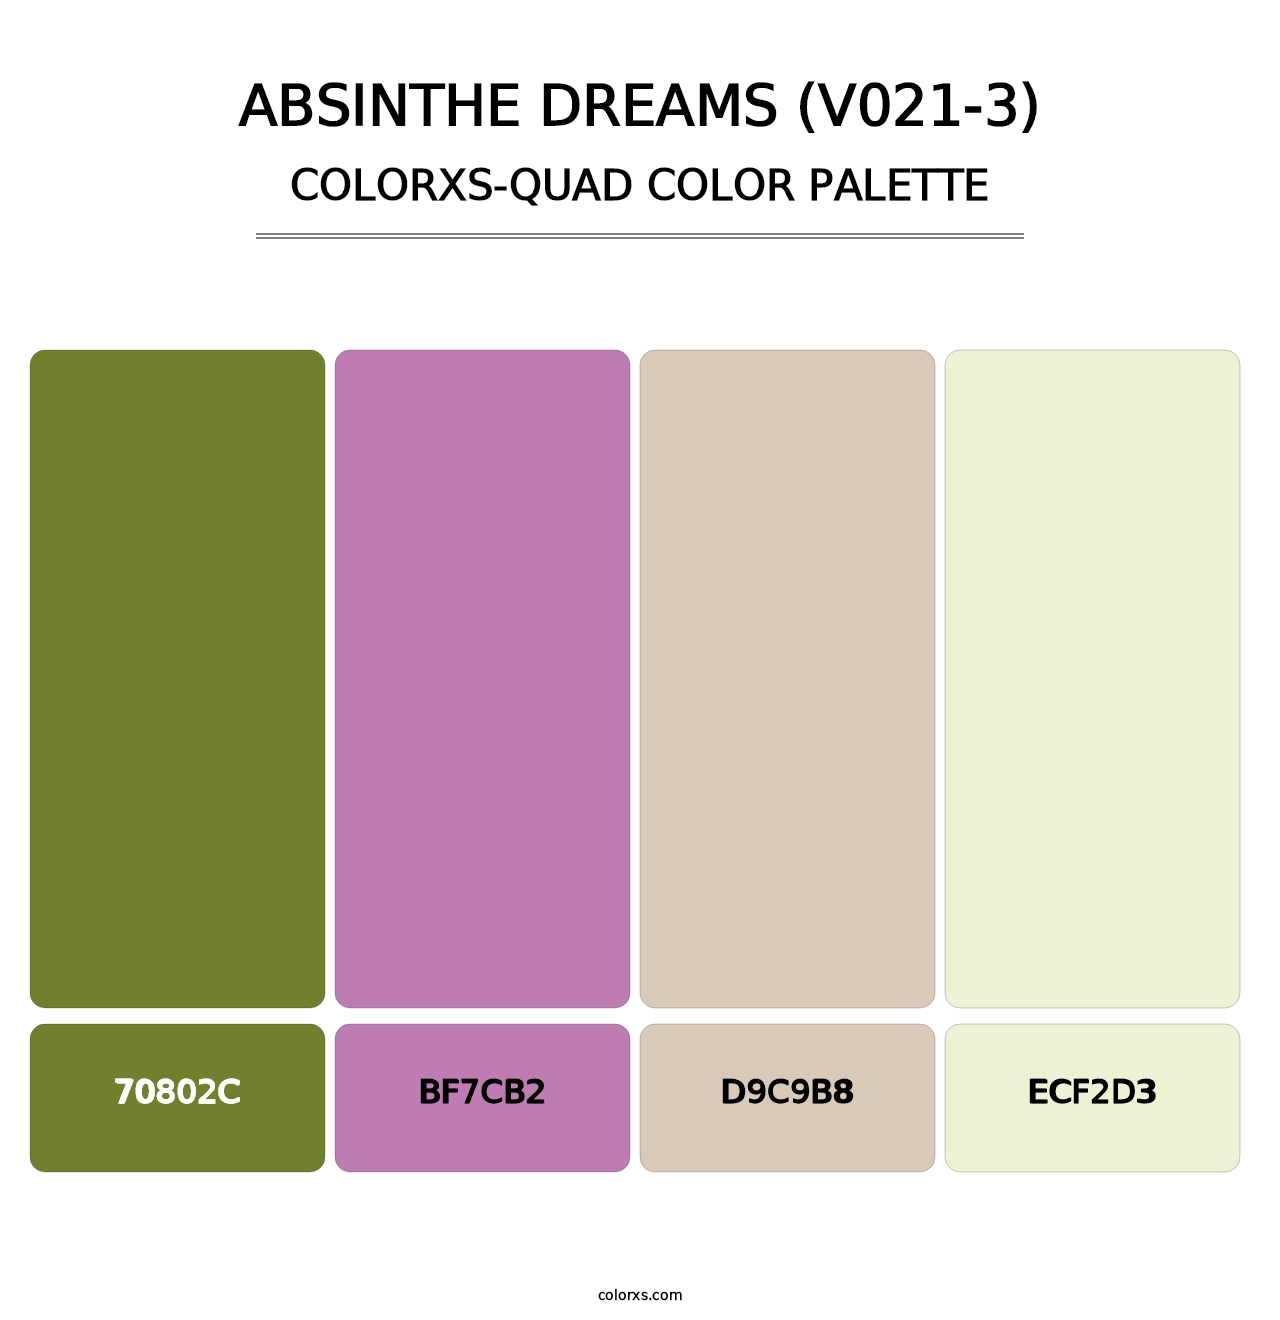 Absinthe Dreams (V021-3) - Colorxs Quad Palette